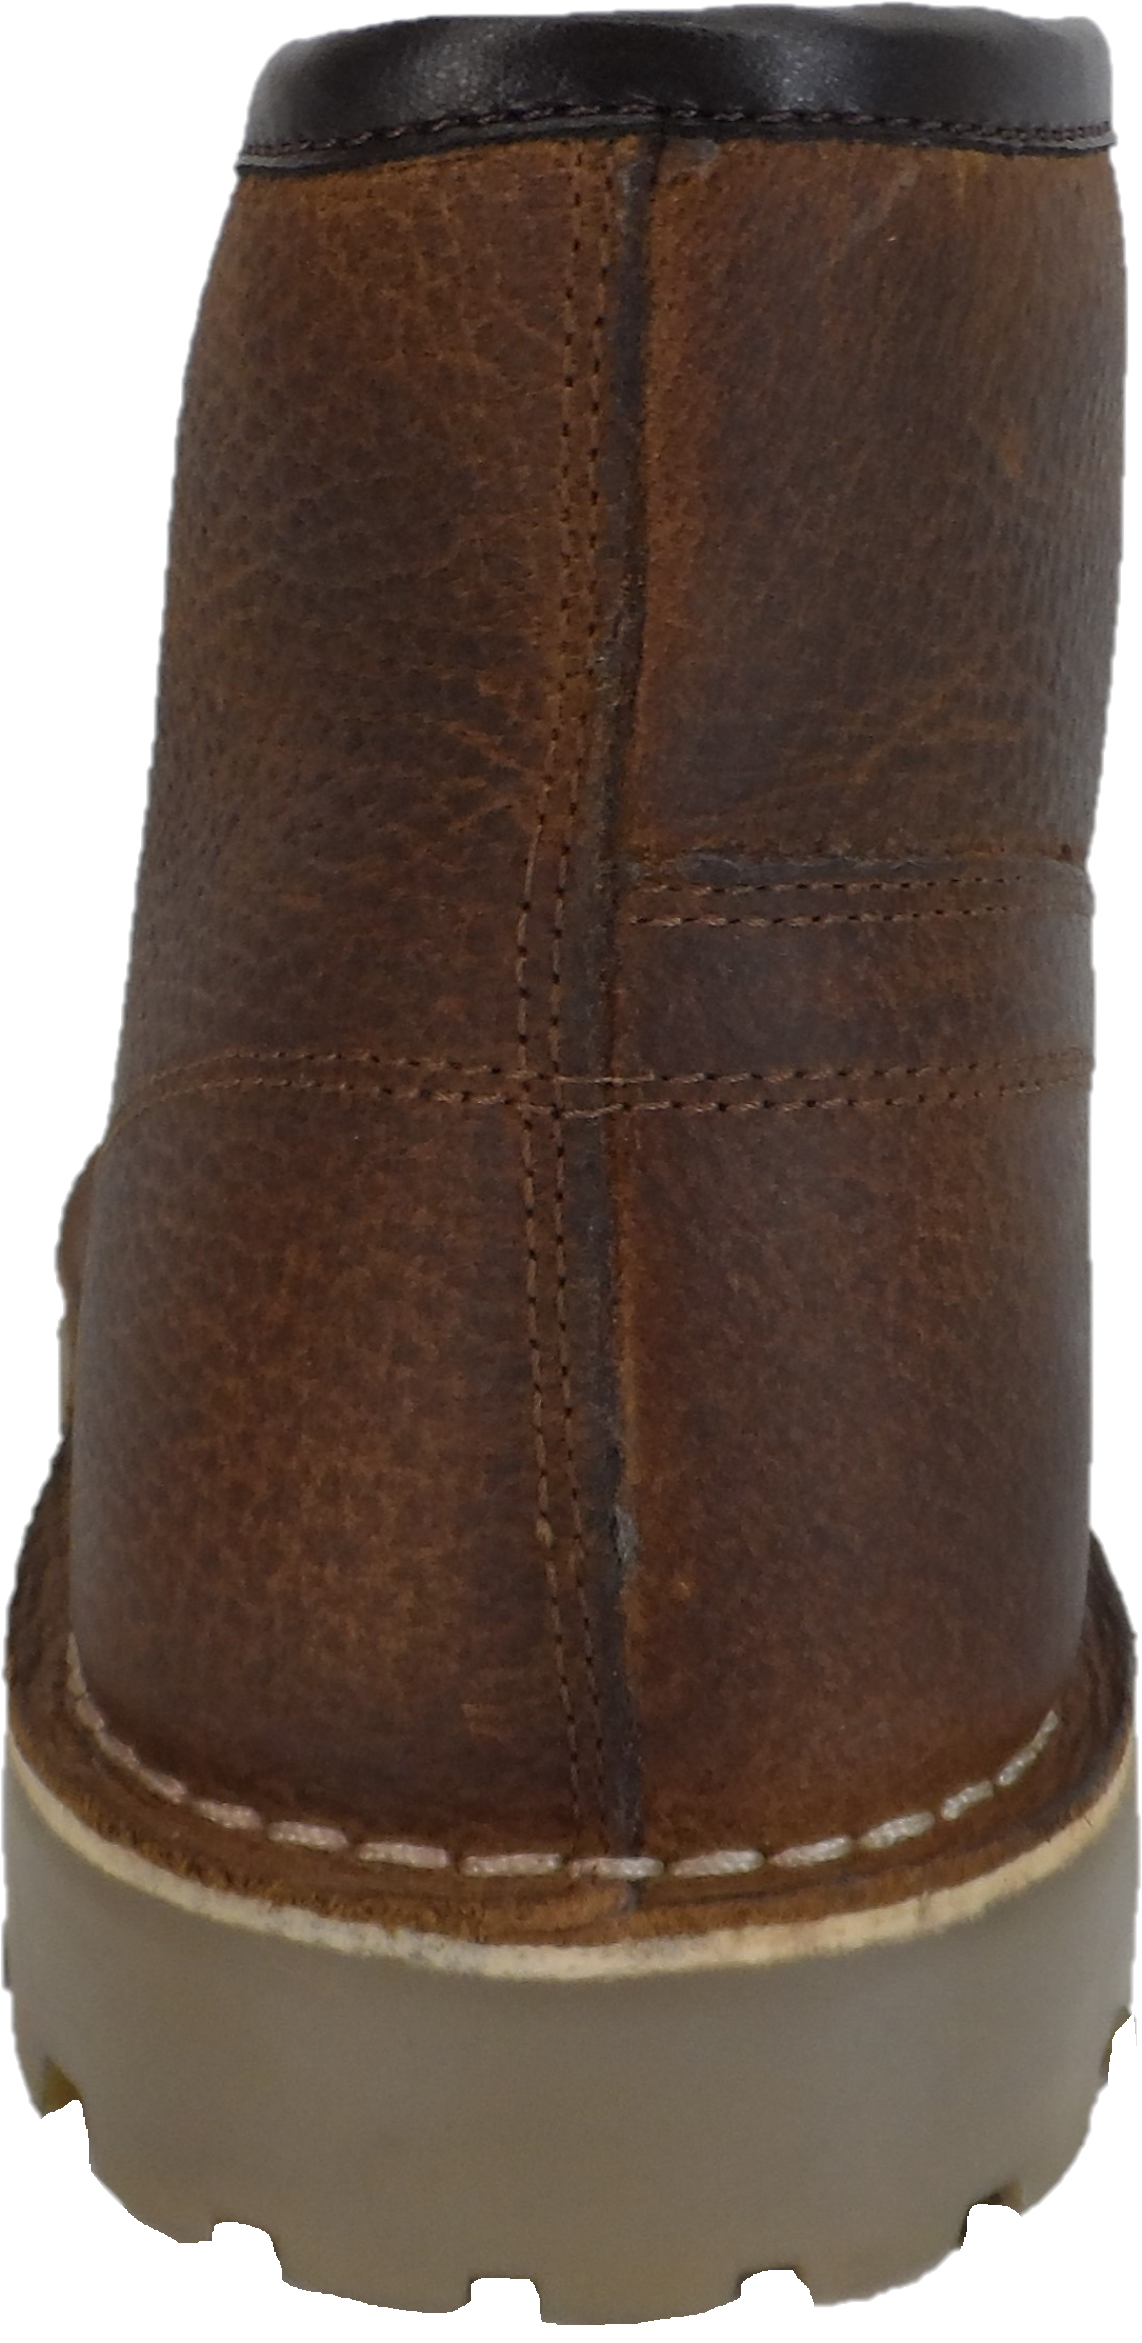 Originale Monkey Boots aus braunem Narbenleder im Stil der 1970er Jahre